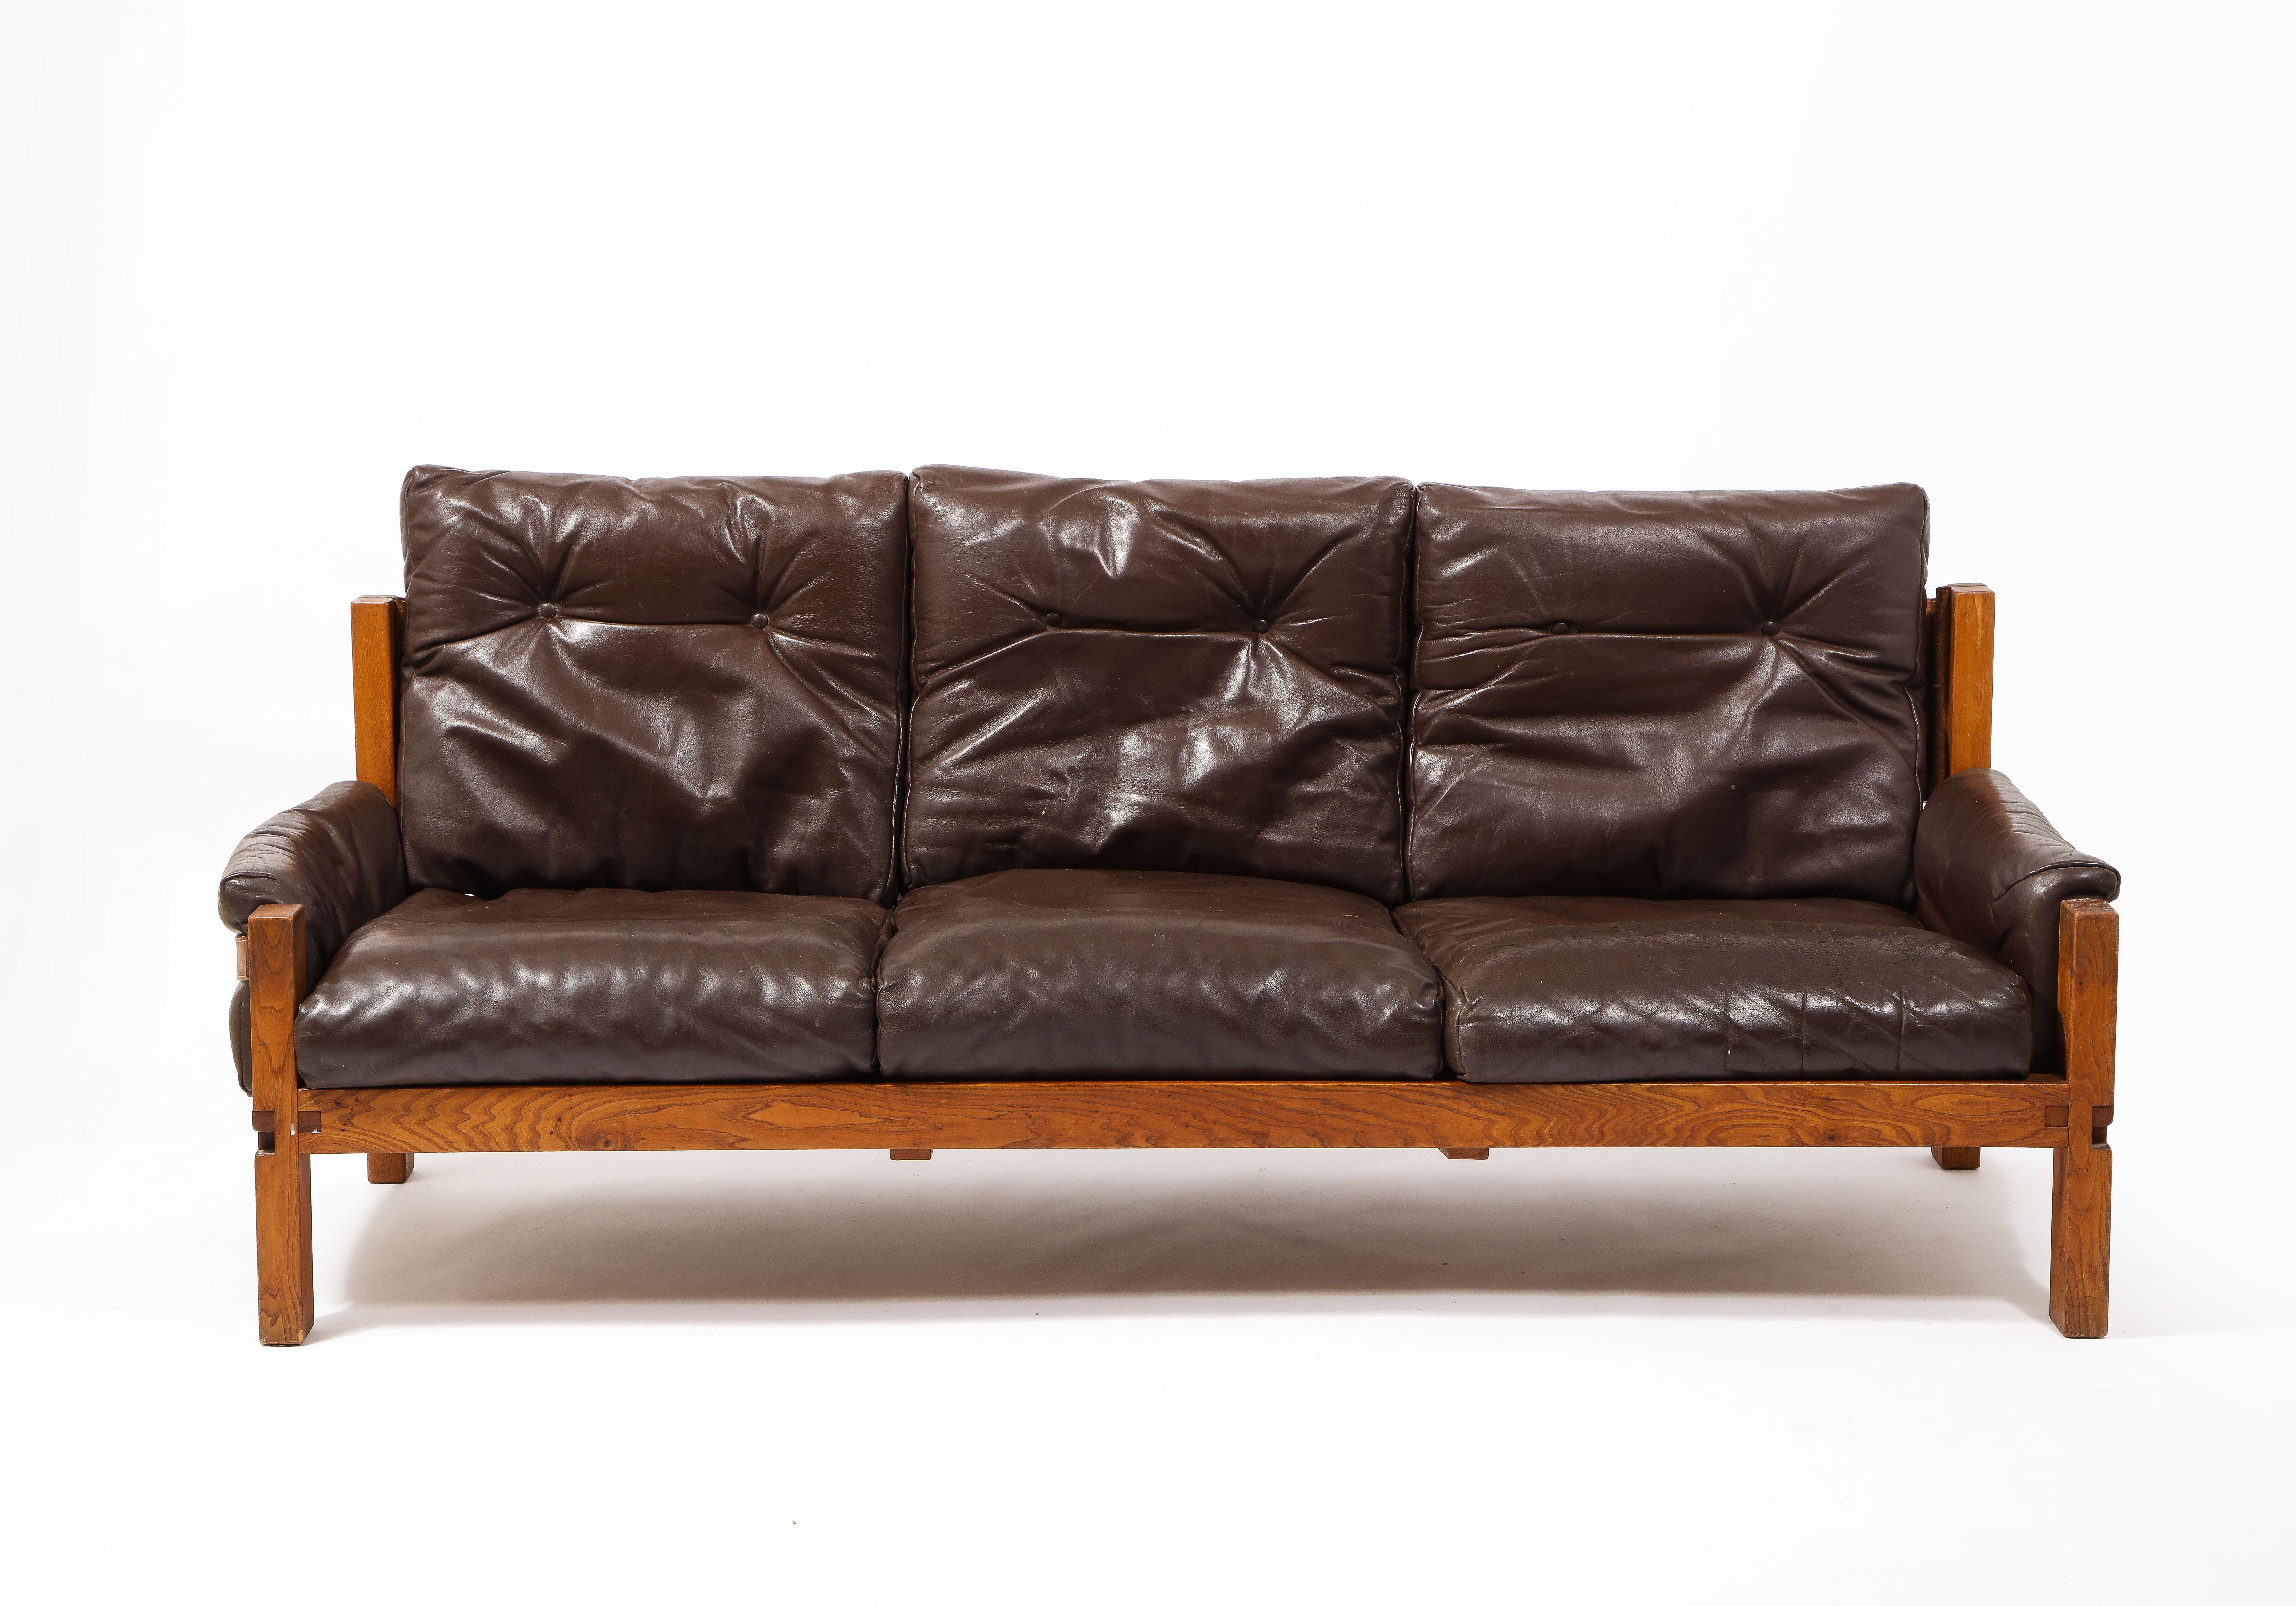 Der größte der S22-Serie mit drei Sitzplätzen. Dieses Sofa ist ganz original mit Daunen gefüllte Lederkissen und original Ulme Rahmen.